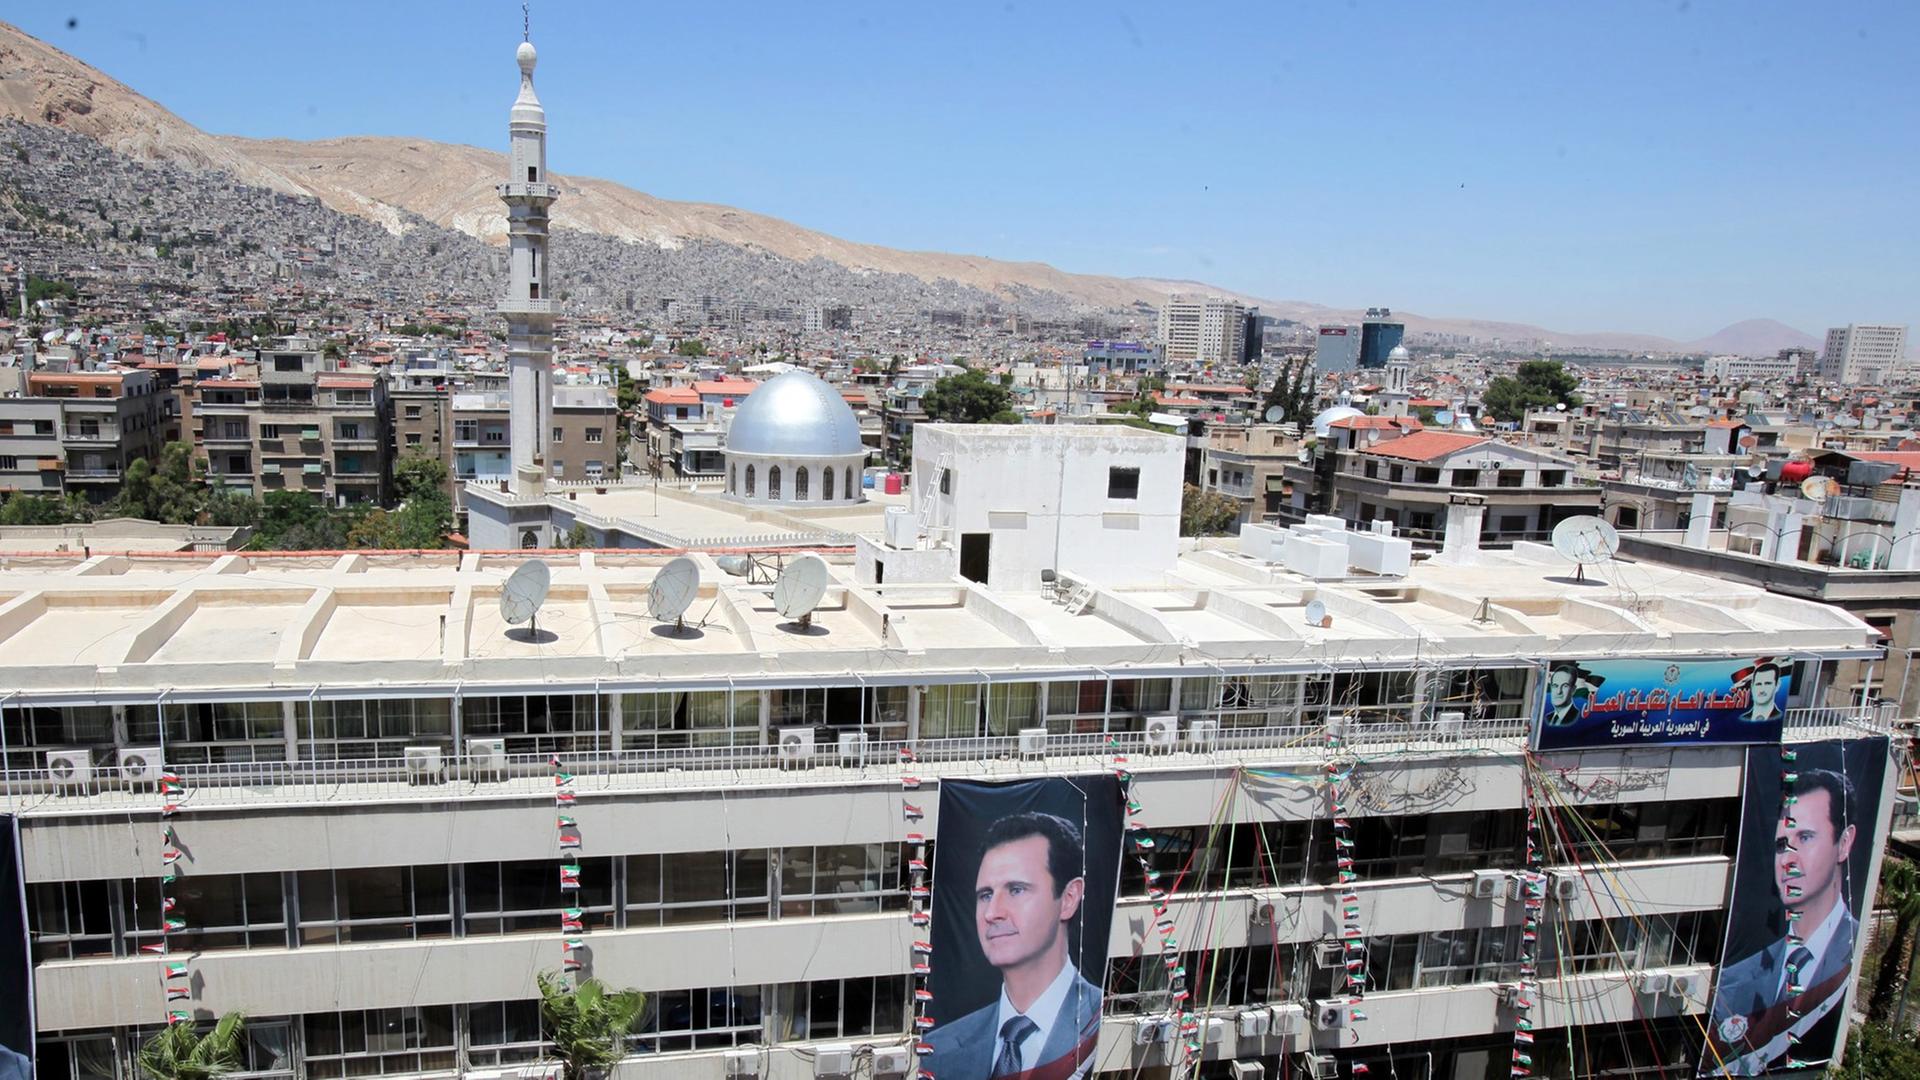 Porträts des syrischen Präsidenten Baschar al-Assad an einem Gebäude in Damaskus